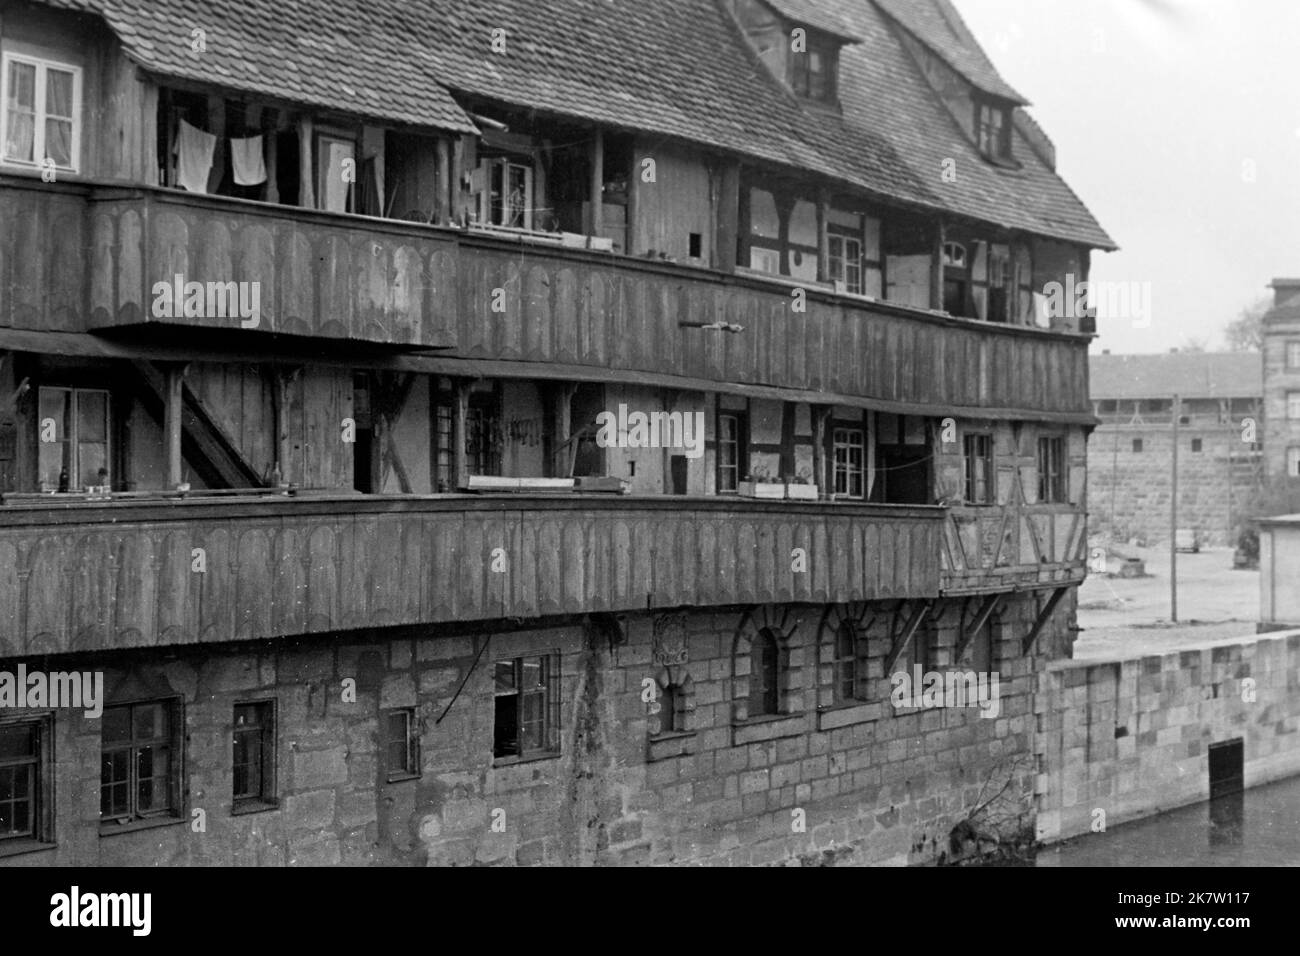 Traditionelles Wohngebäude mit Holzbalkons an der Pegnitz, Nürnberg 1957. Bâtiment résidentiel traditionnel avec balcons en bois sur la rive de la rivière Pegnitz, Nuremberg vers 1957. Banque D'Images